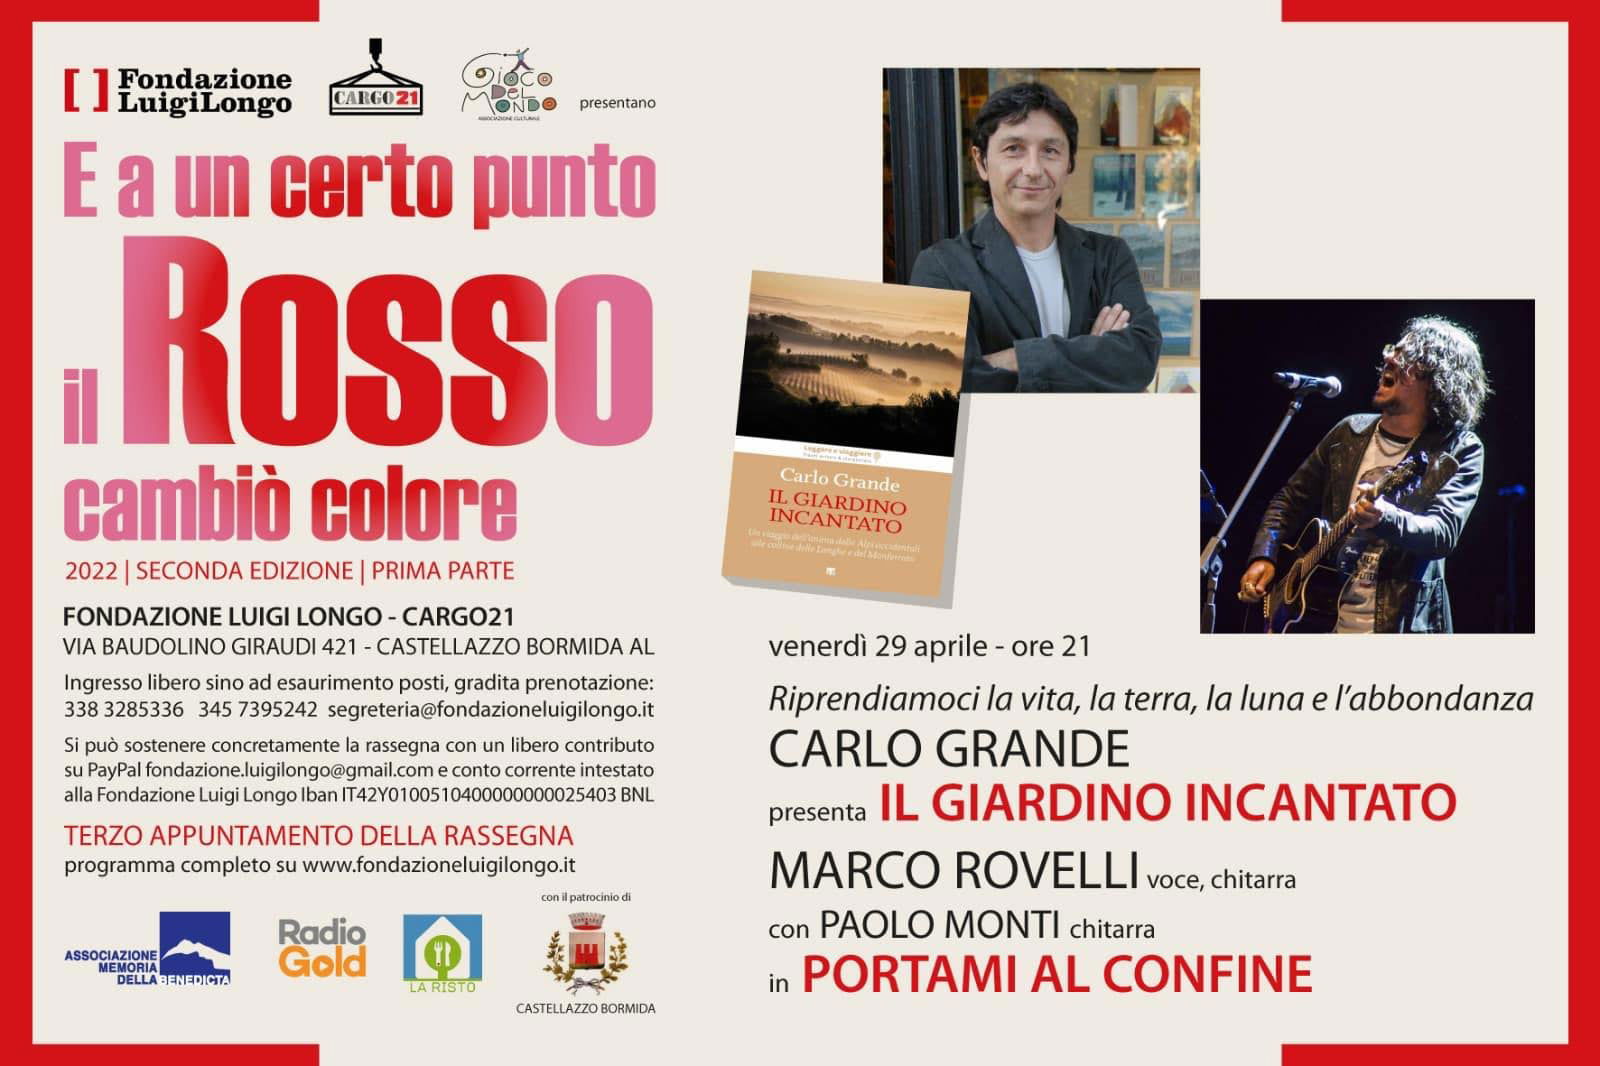 Marco Rovelli in concerto alla Fondazione Luigi Longo